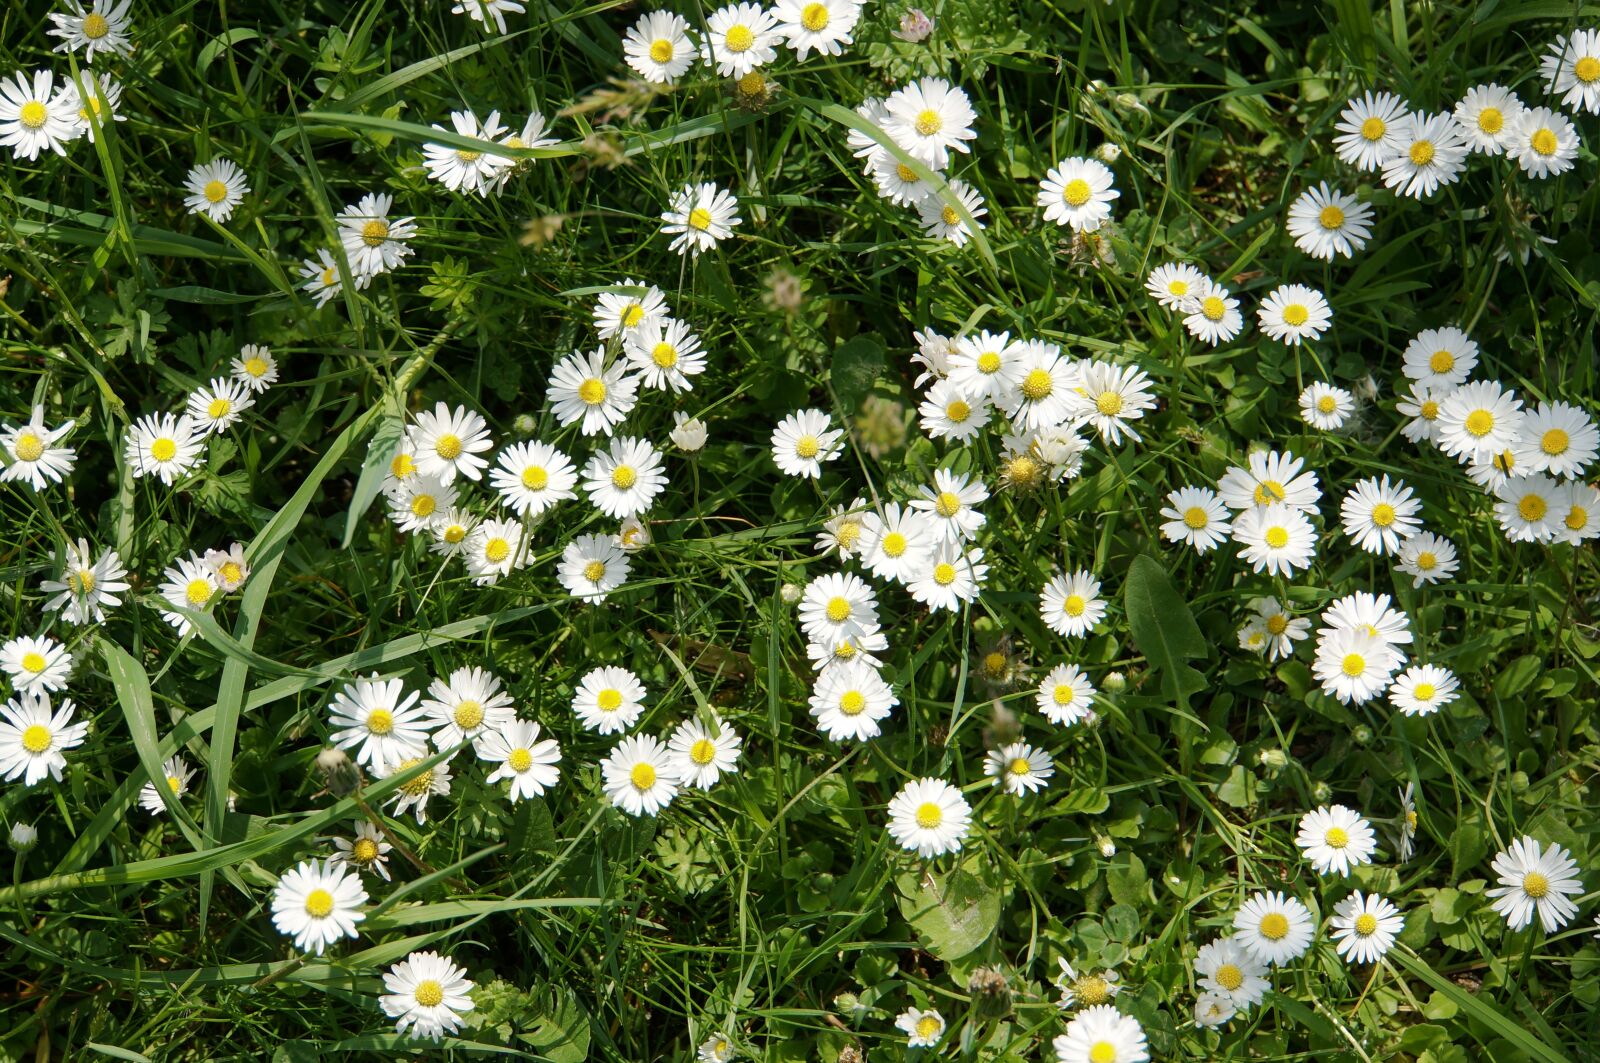 Sony Alpha NEX-6 + Sony E 18-200mm F3.5-6.3 OSS sample photo. Daisy, meadow, flower meadow photography